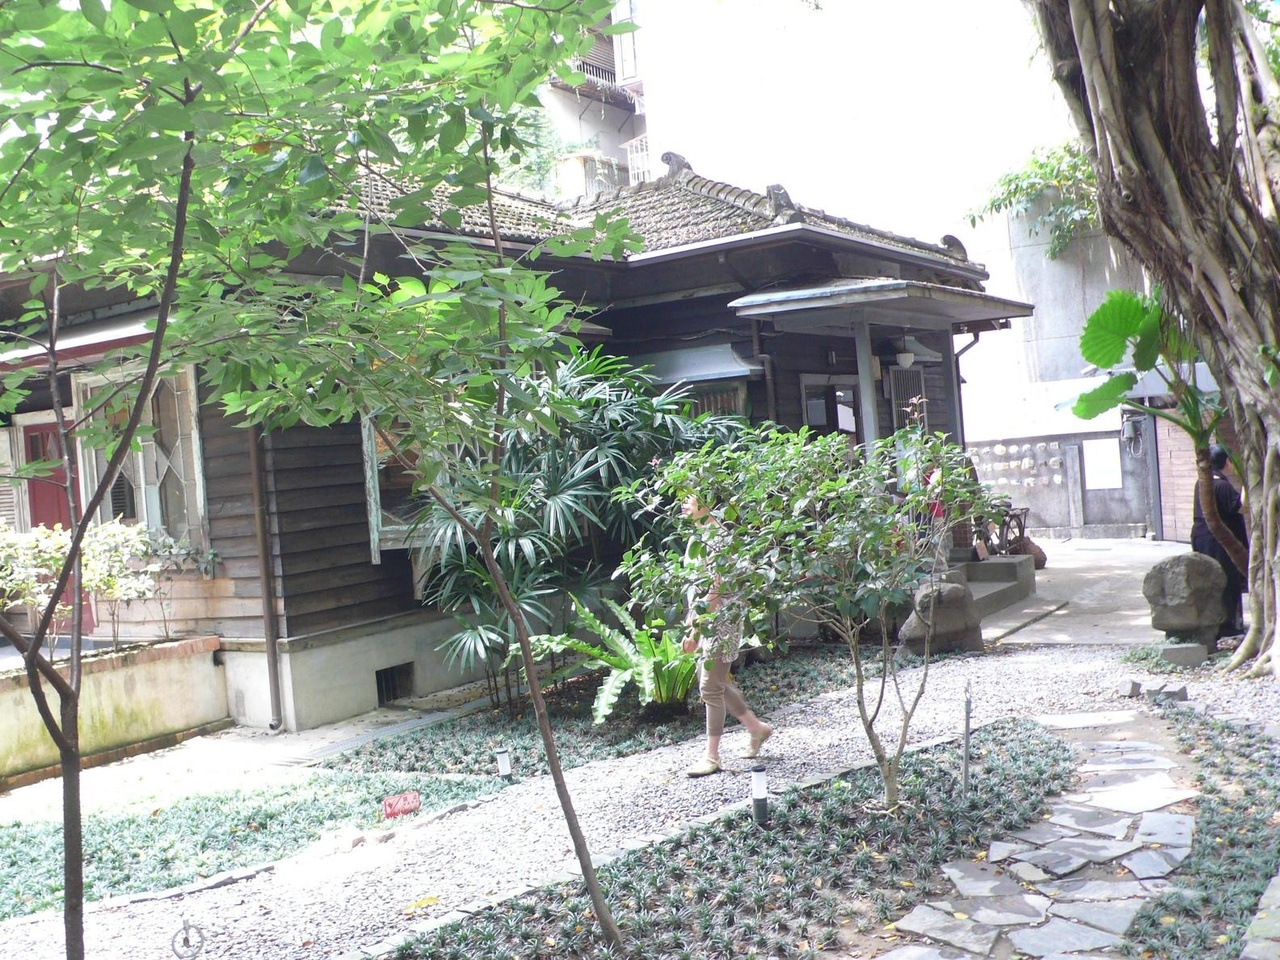 日式民居很注重室外空間、環境，會打造樹木、庭園。